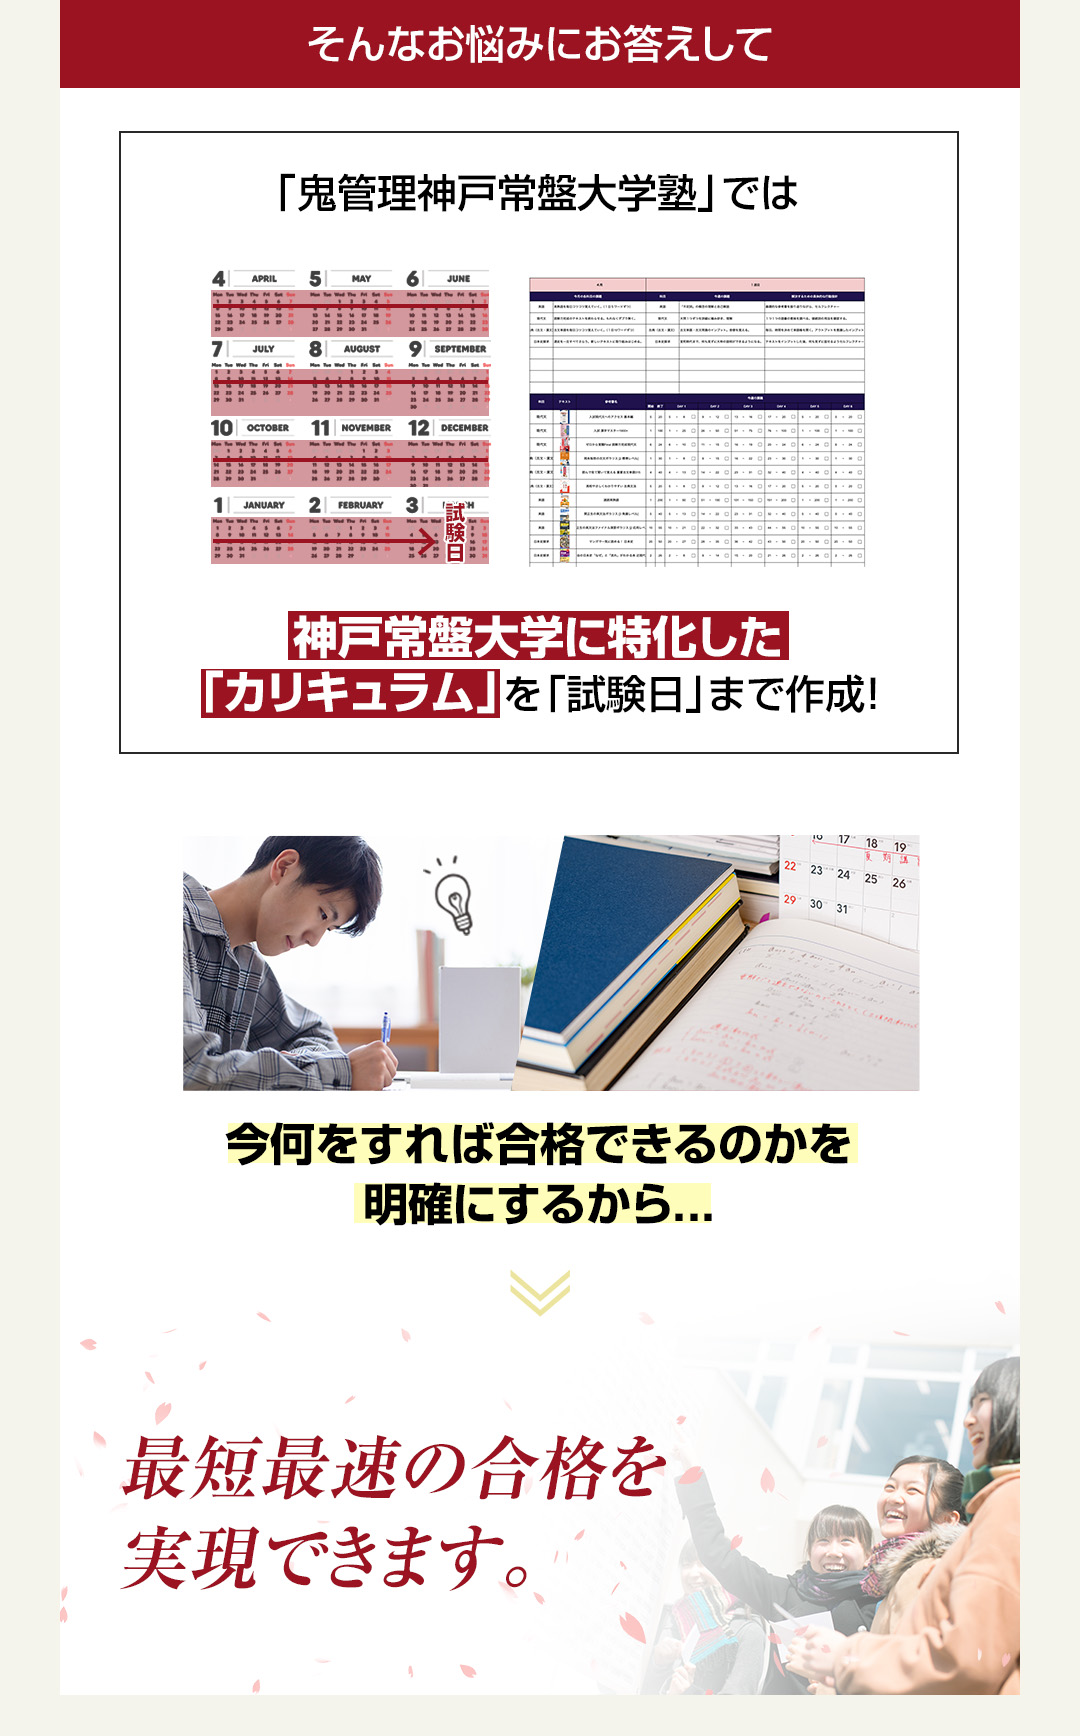 「鬼管理神戸常盤大学塾」では神戸常盤大学に特化した「カリキュラム」を「試験日」まで作成